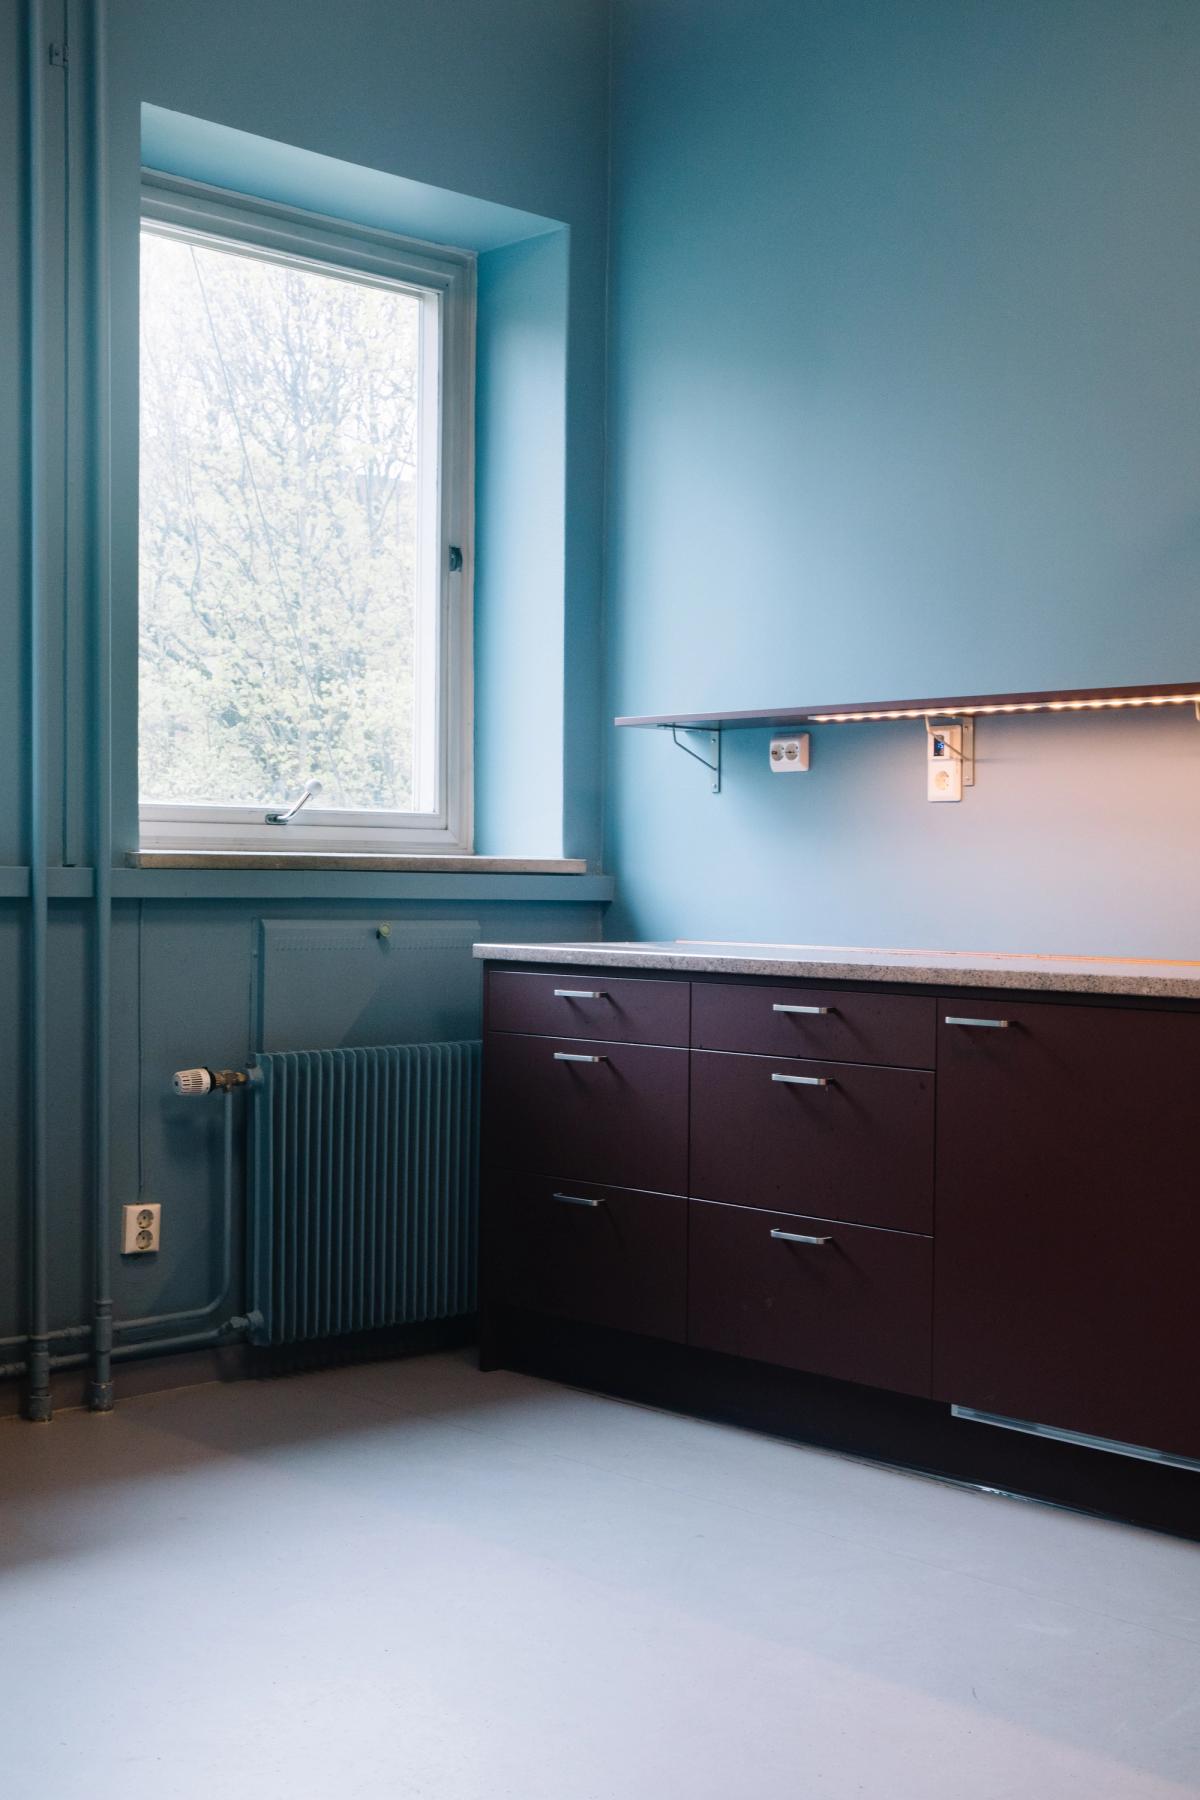 Foto av kjøkken for de ansatte i 2. etasje. Blå vegg og burgunder kjøkkenskap. Grorudstein som benkeplate, grå/rosa farge. 